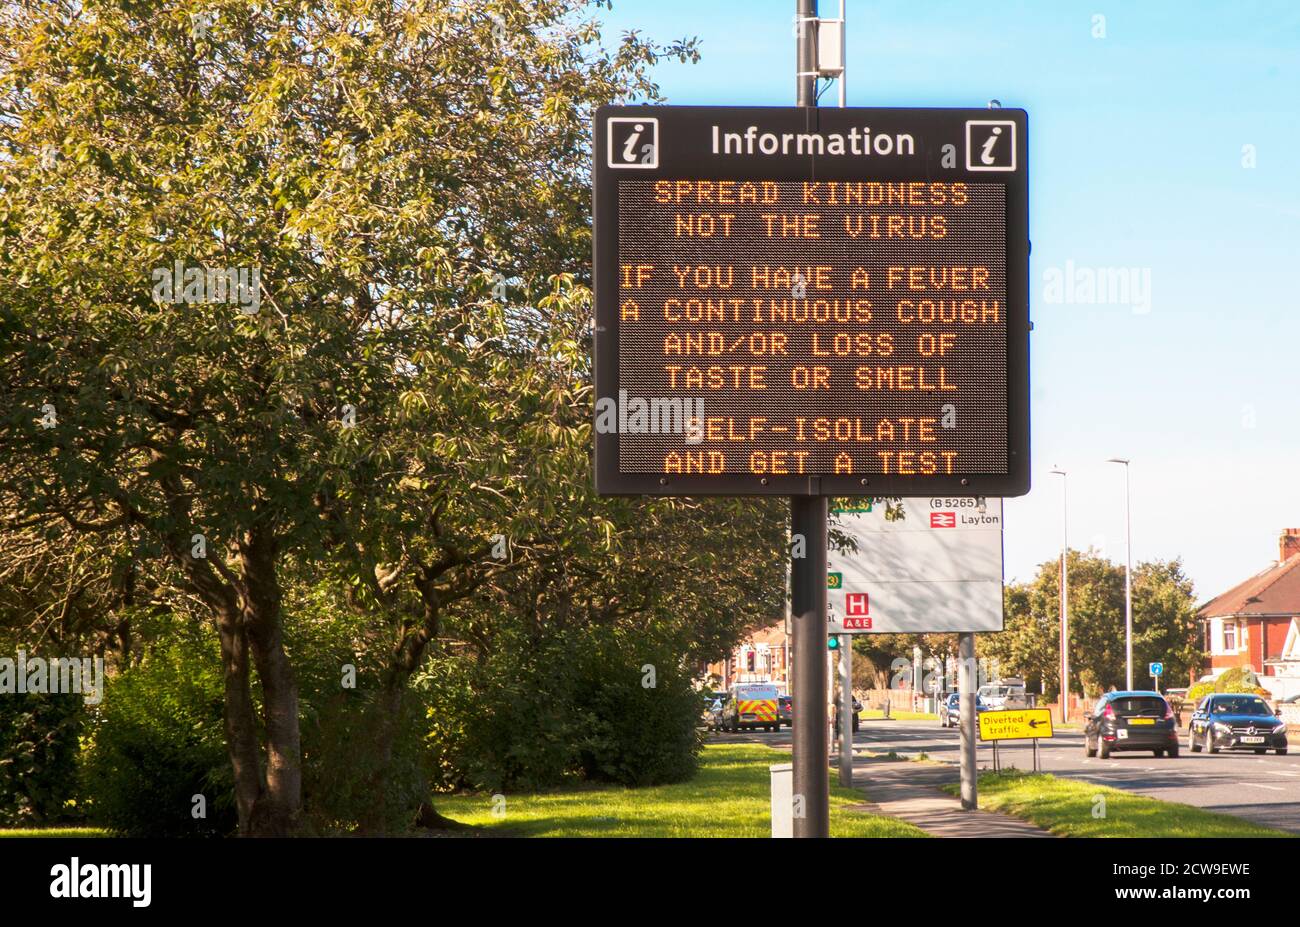 Panneau d'information lumineux sur la protection contre le coronavirus Covid 19 activé route d'entrée dans Blackpool Lancashire Angleterre Royaume-Uni Banque D'Images